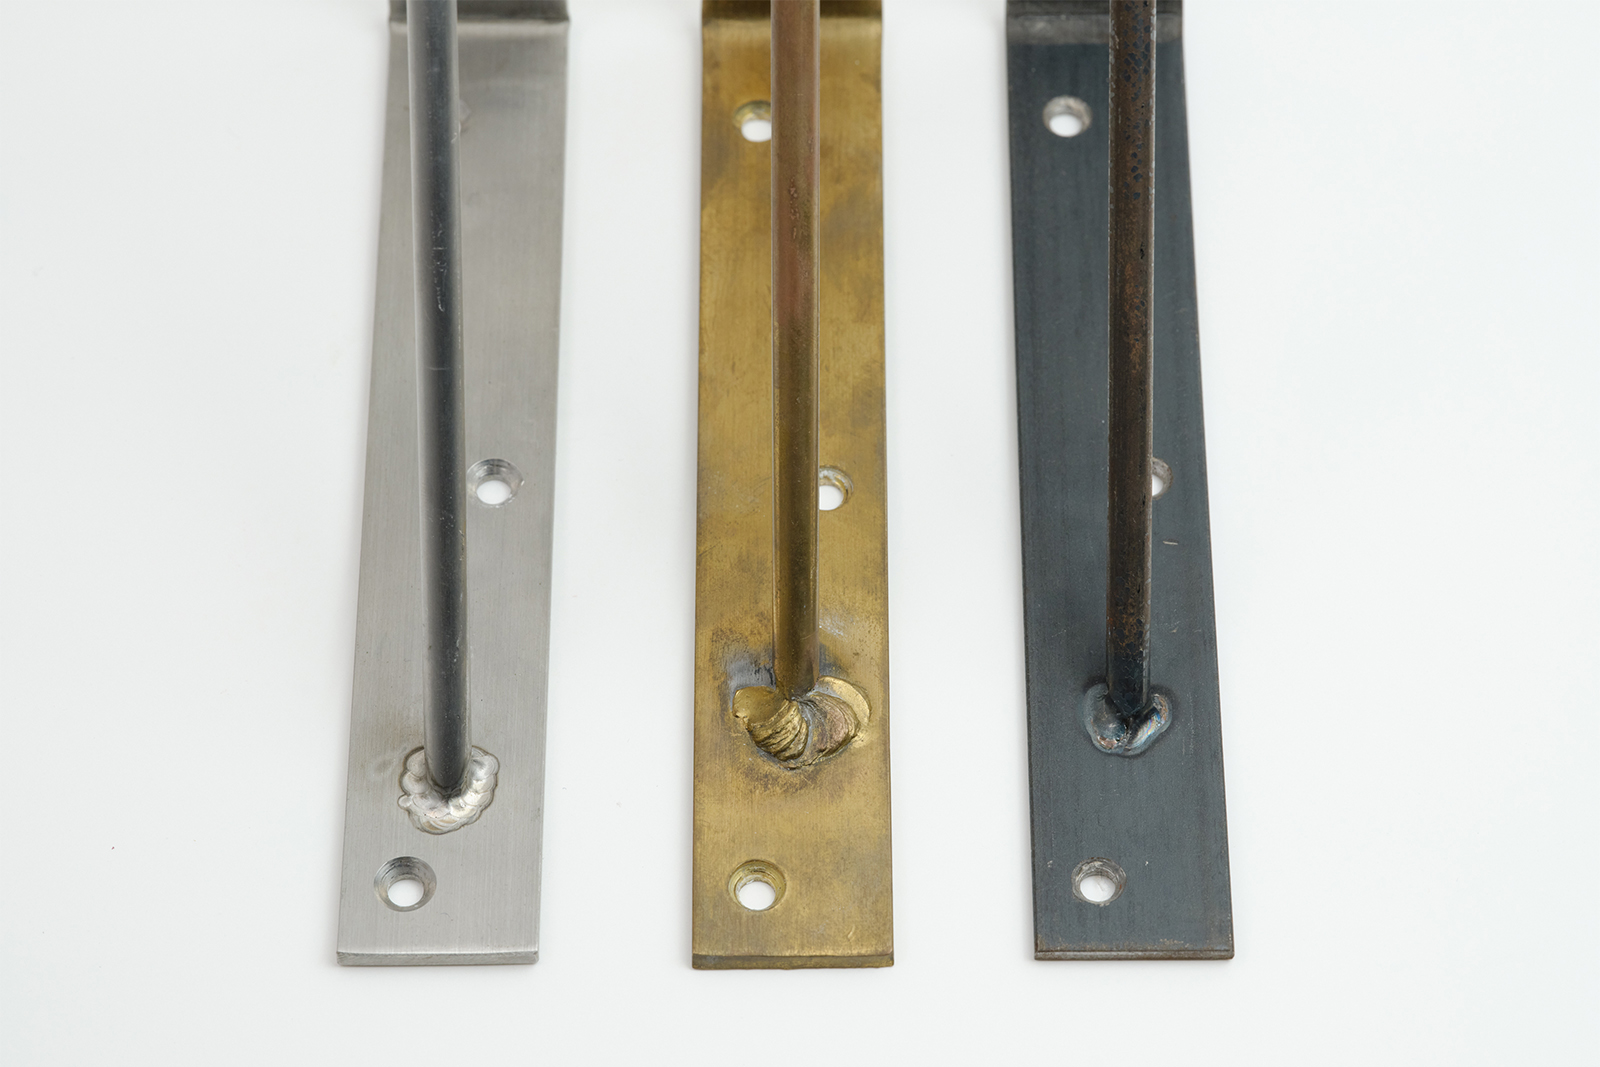 棚受け金物 ステンレス D150 PS-BK001-06-G141 素材は全部で3種類。左から、ステンレス・真鍮・鉄